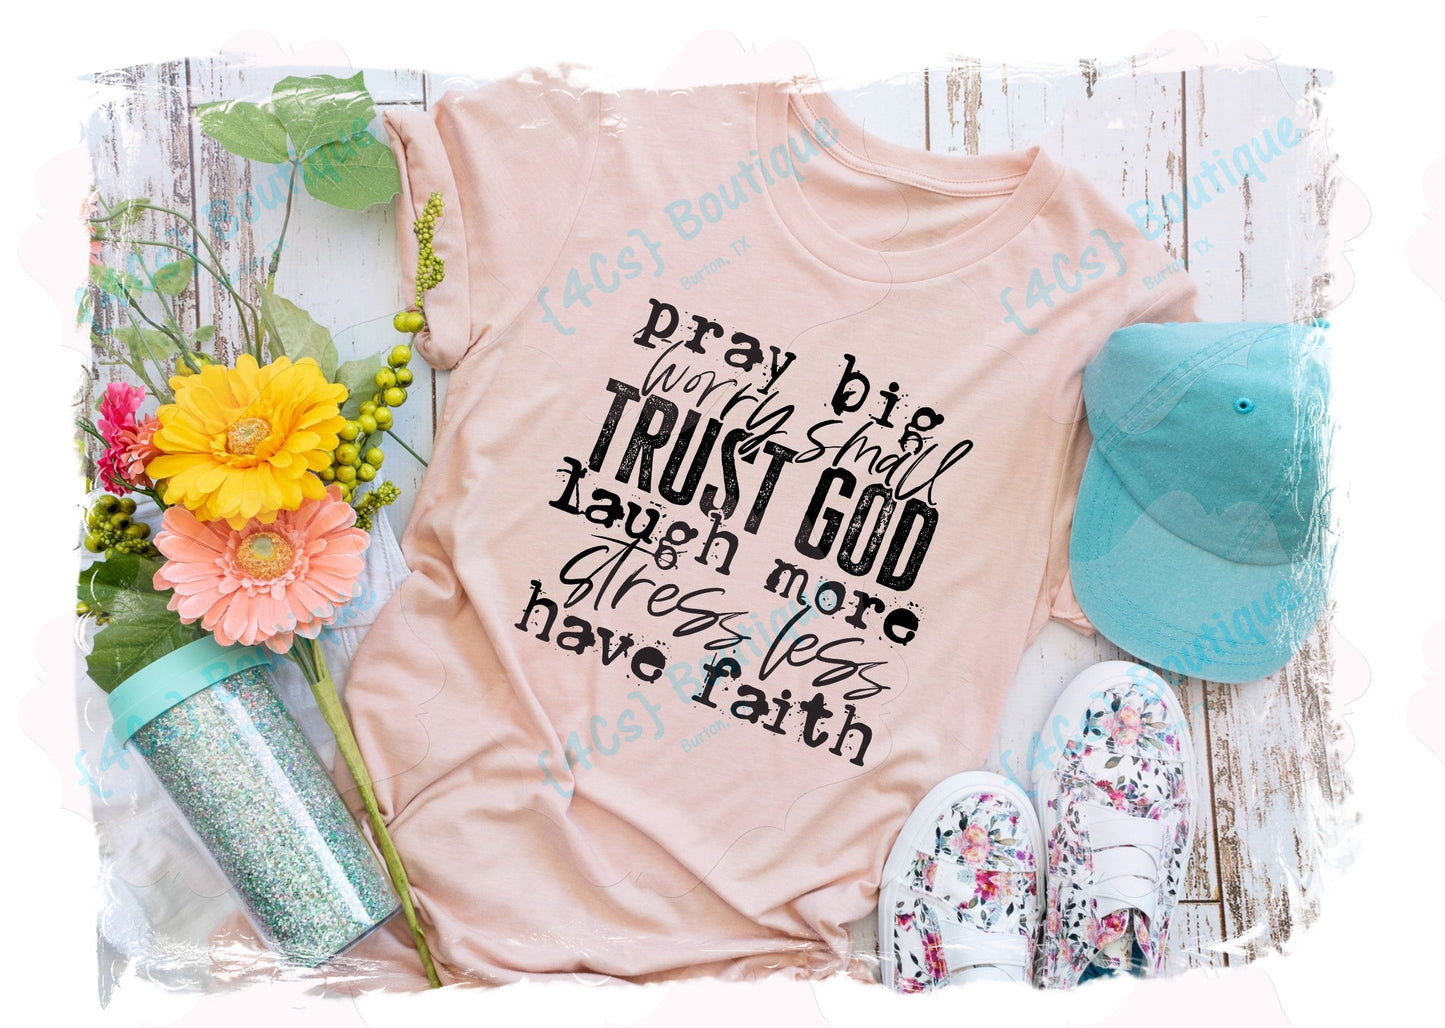 Pray Big Worry Small Trust God Laugh More... Shirt